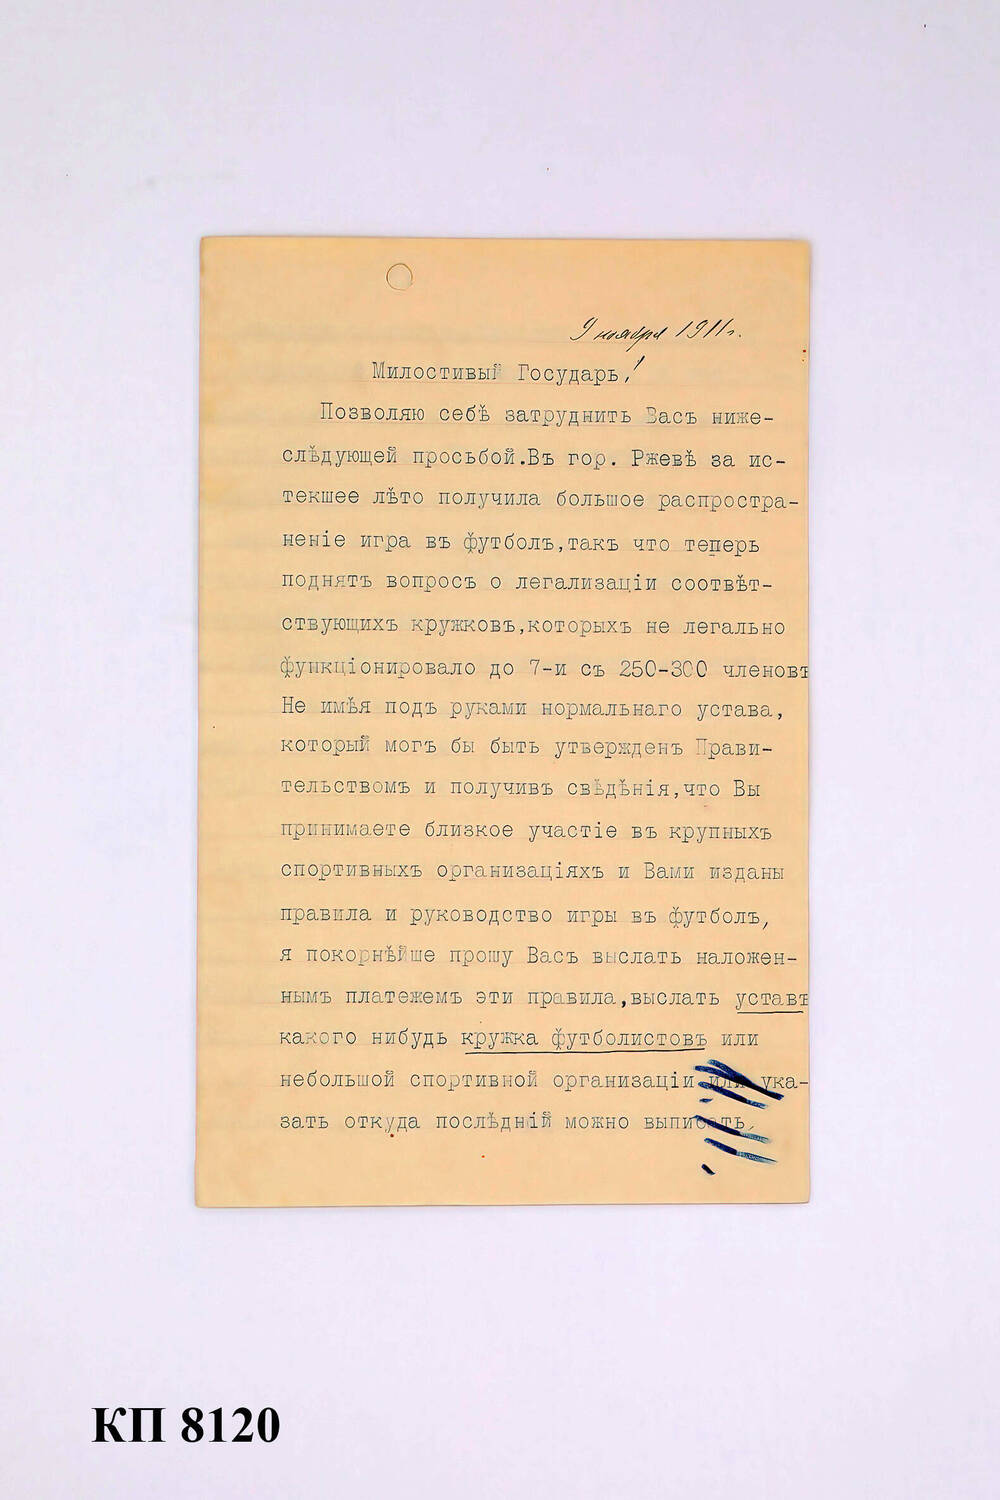 Письмо о нормативных документах по организации футбольного кружка в г. Ржев, 9 ноября 1911 г.